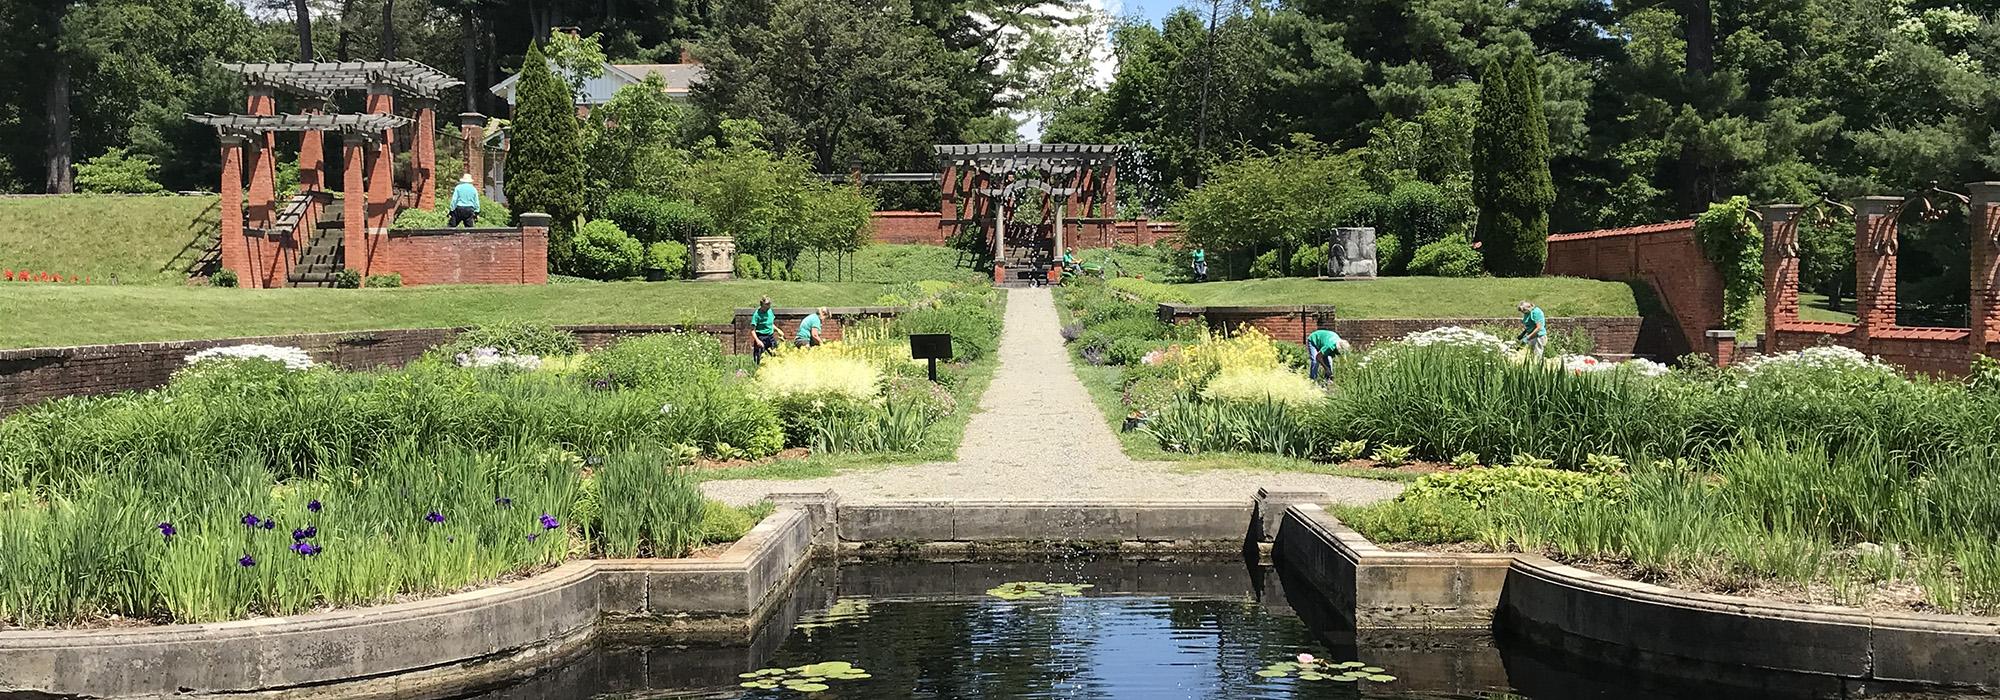 Formal Gardens at Vanderbilt Mansion National Historic Site, Hyde Park, NY